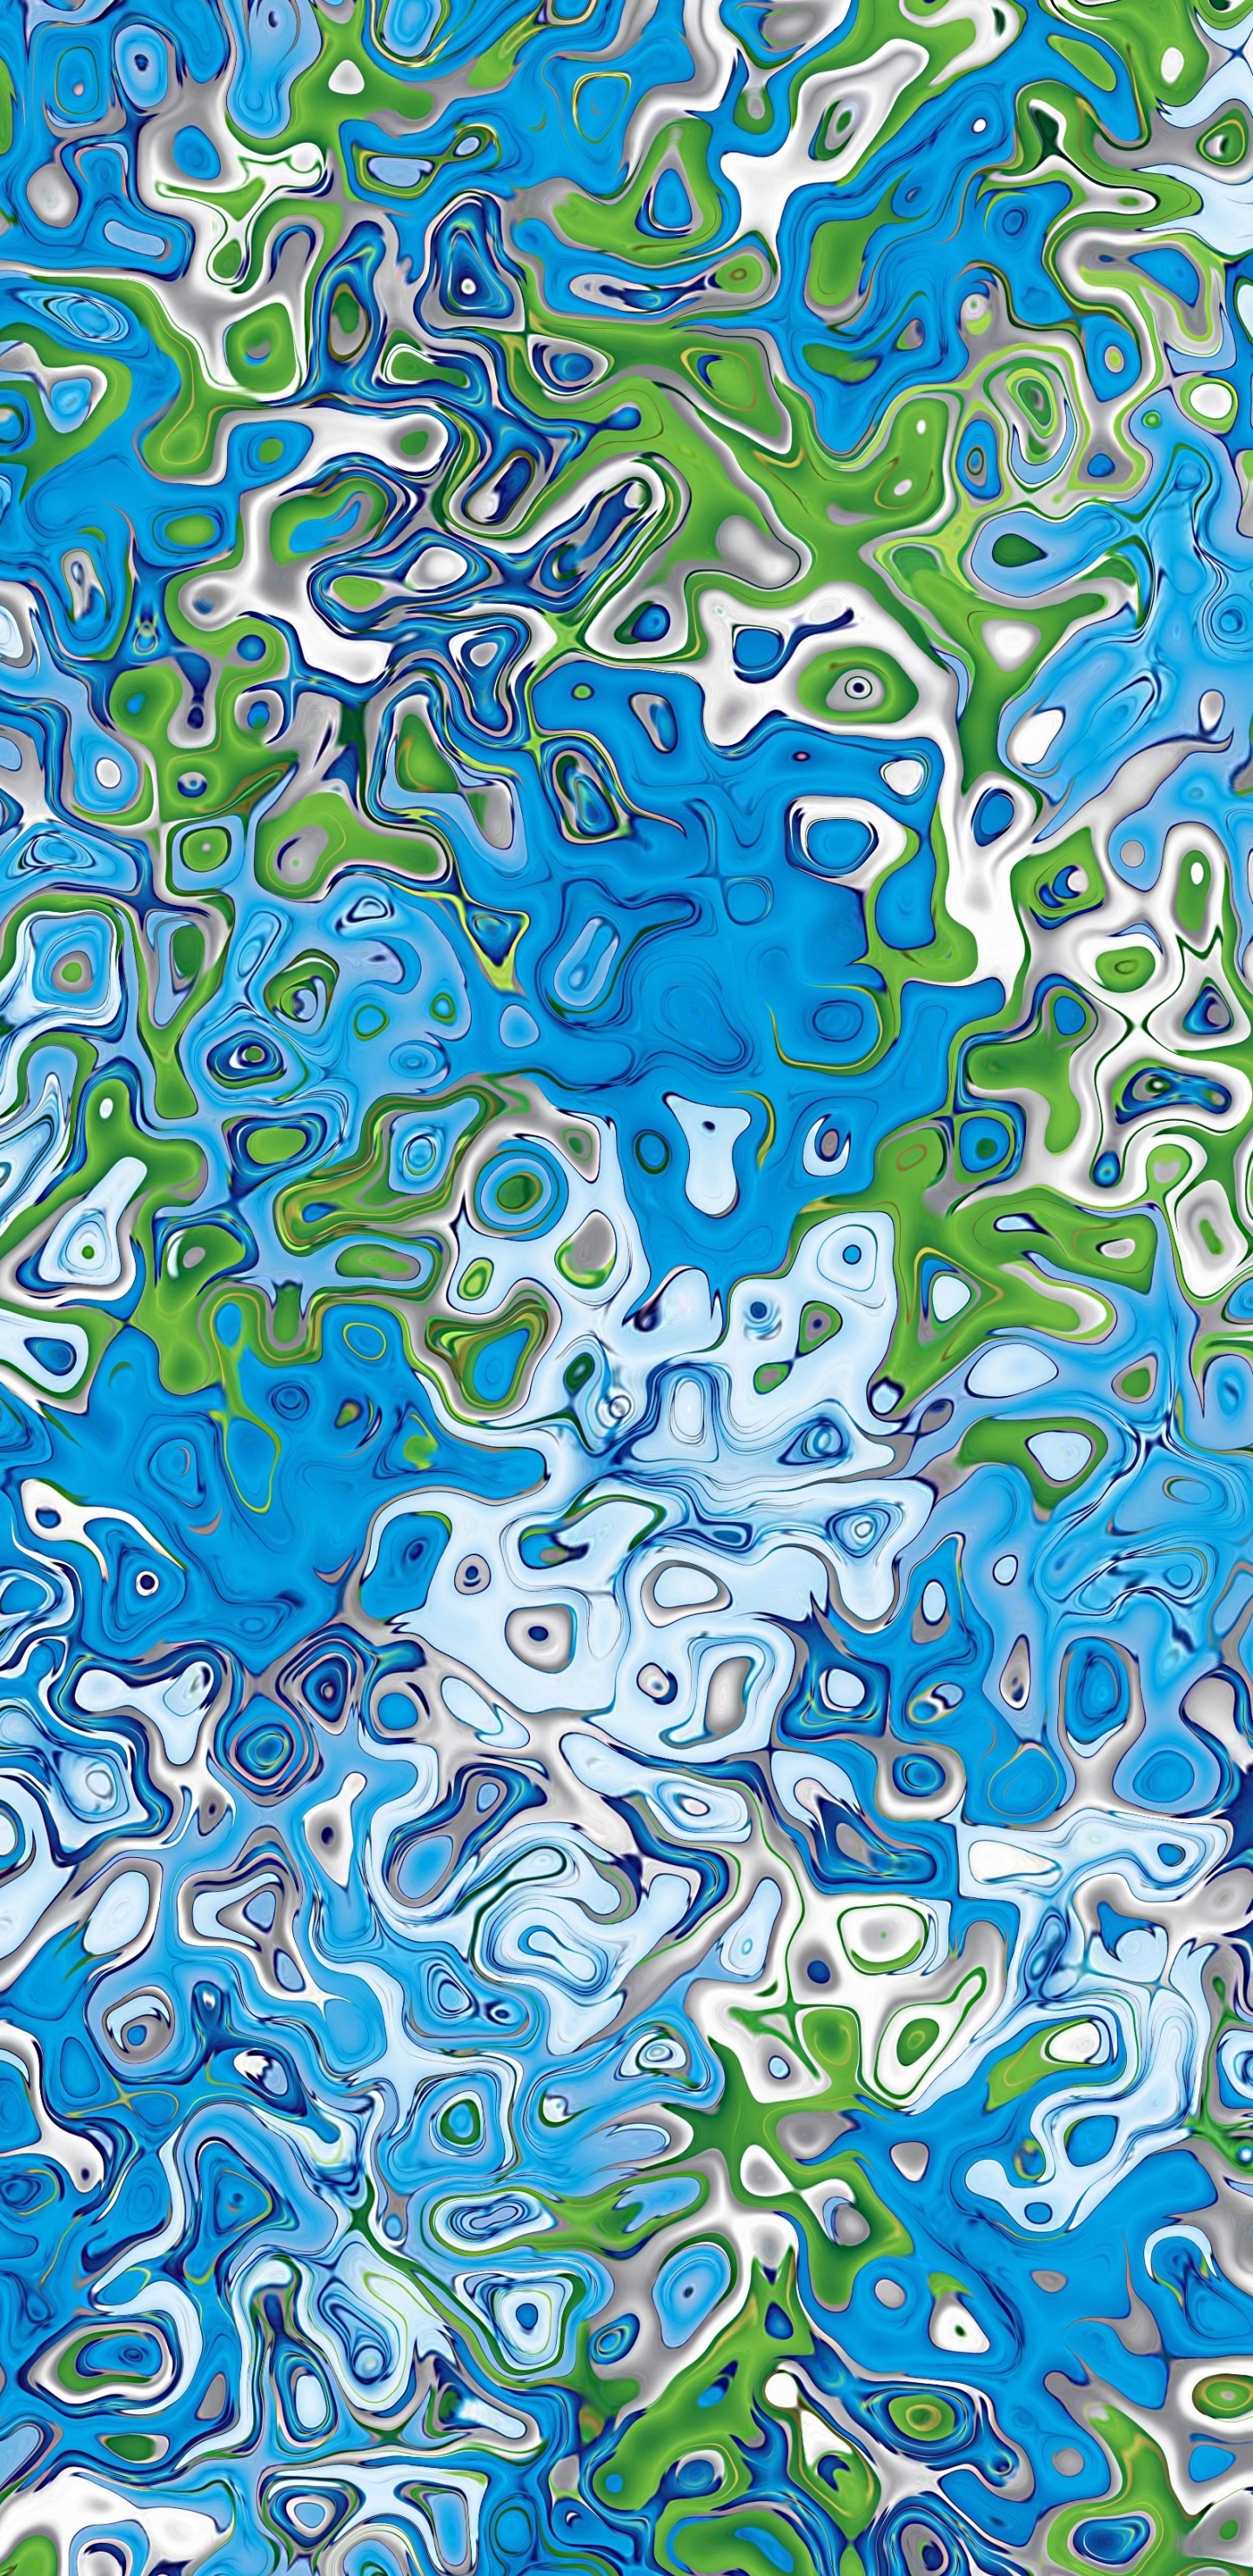 Grün-blau-weiße Abstrakte Malerei. Wallpaper in 1440x2960 Resolution